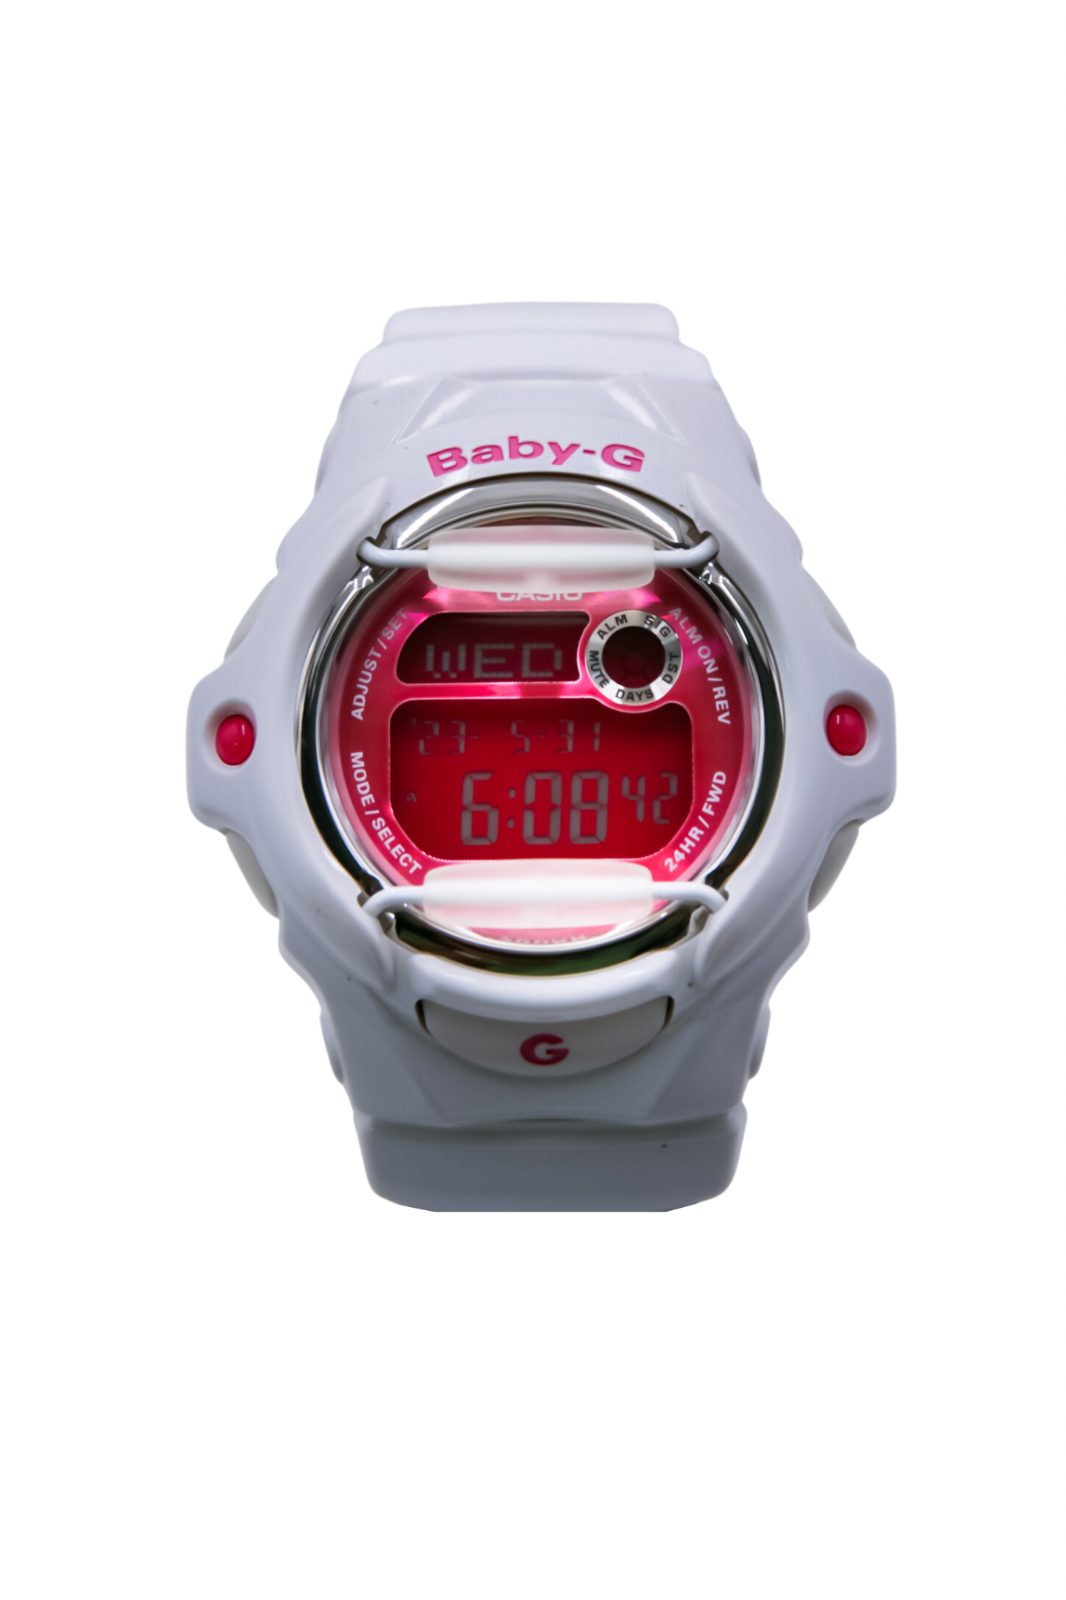 Casio Baby-G Ladies Watch BG169R-7D